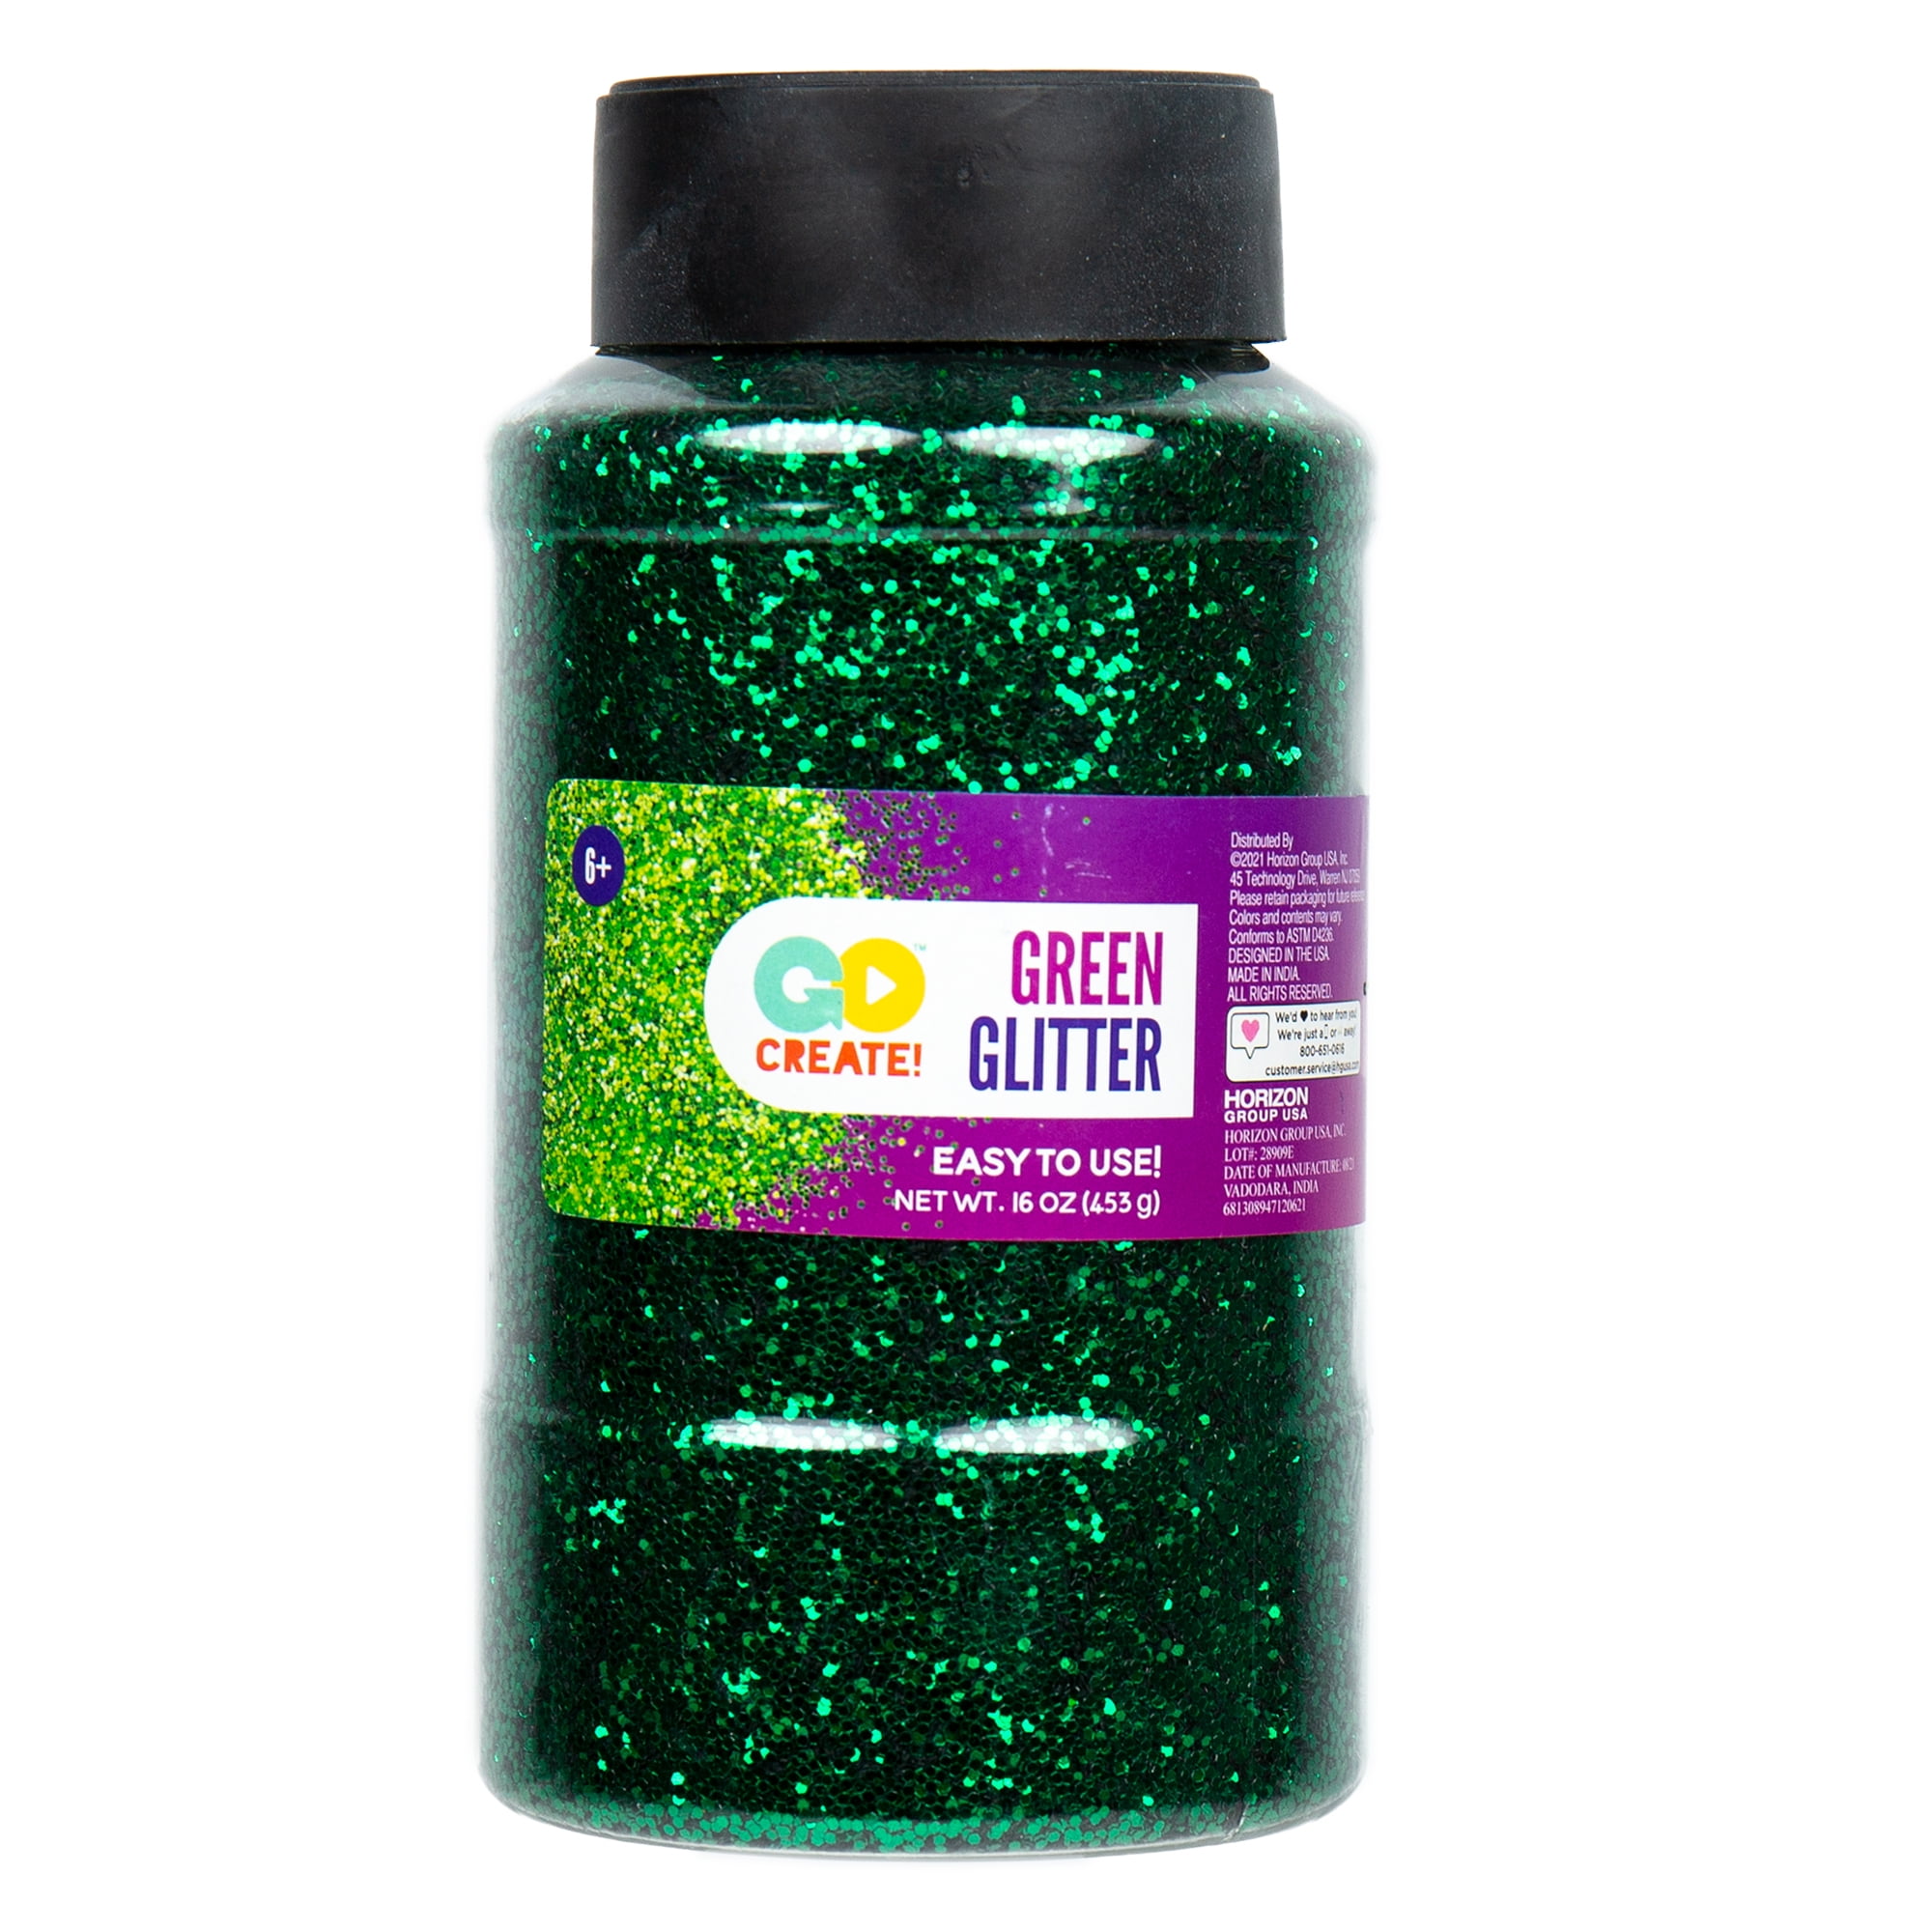 5.5 oz each Empty Glitter Shaker